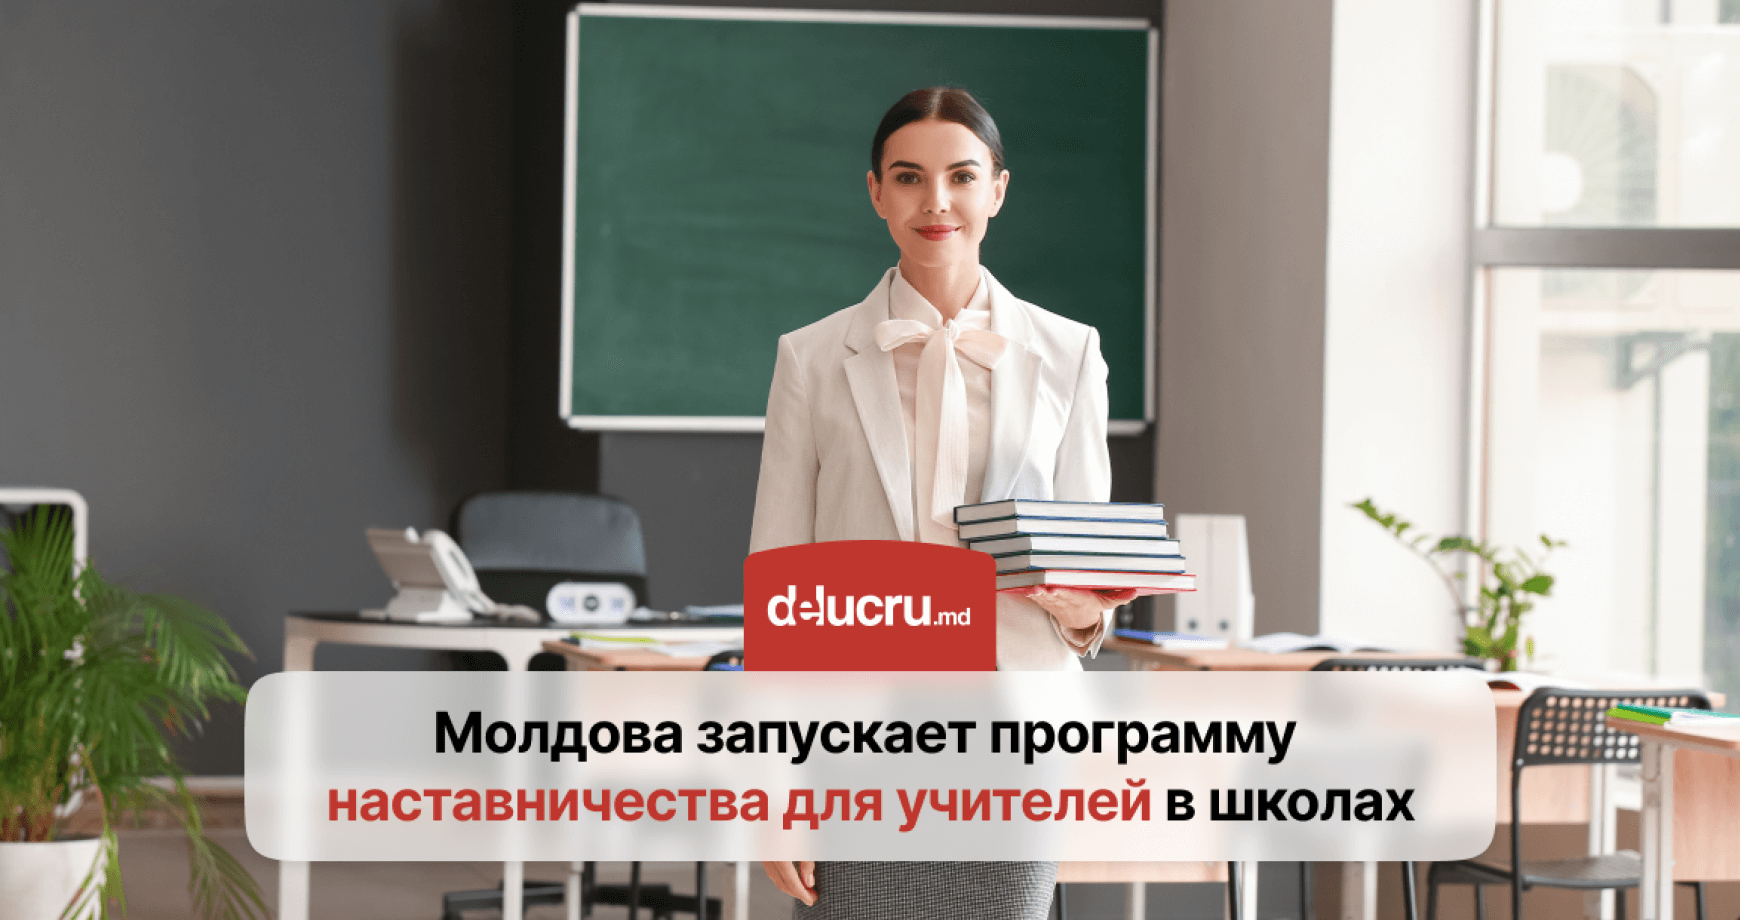 В школах Молдовы появятся наставники для учителей